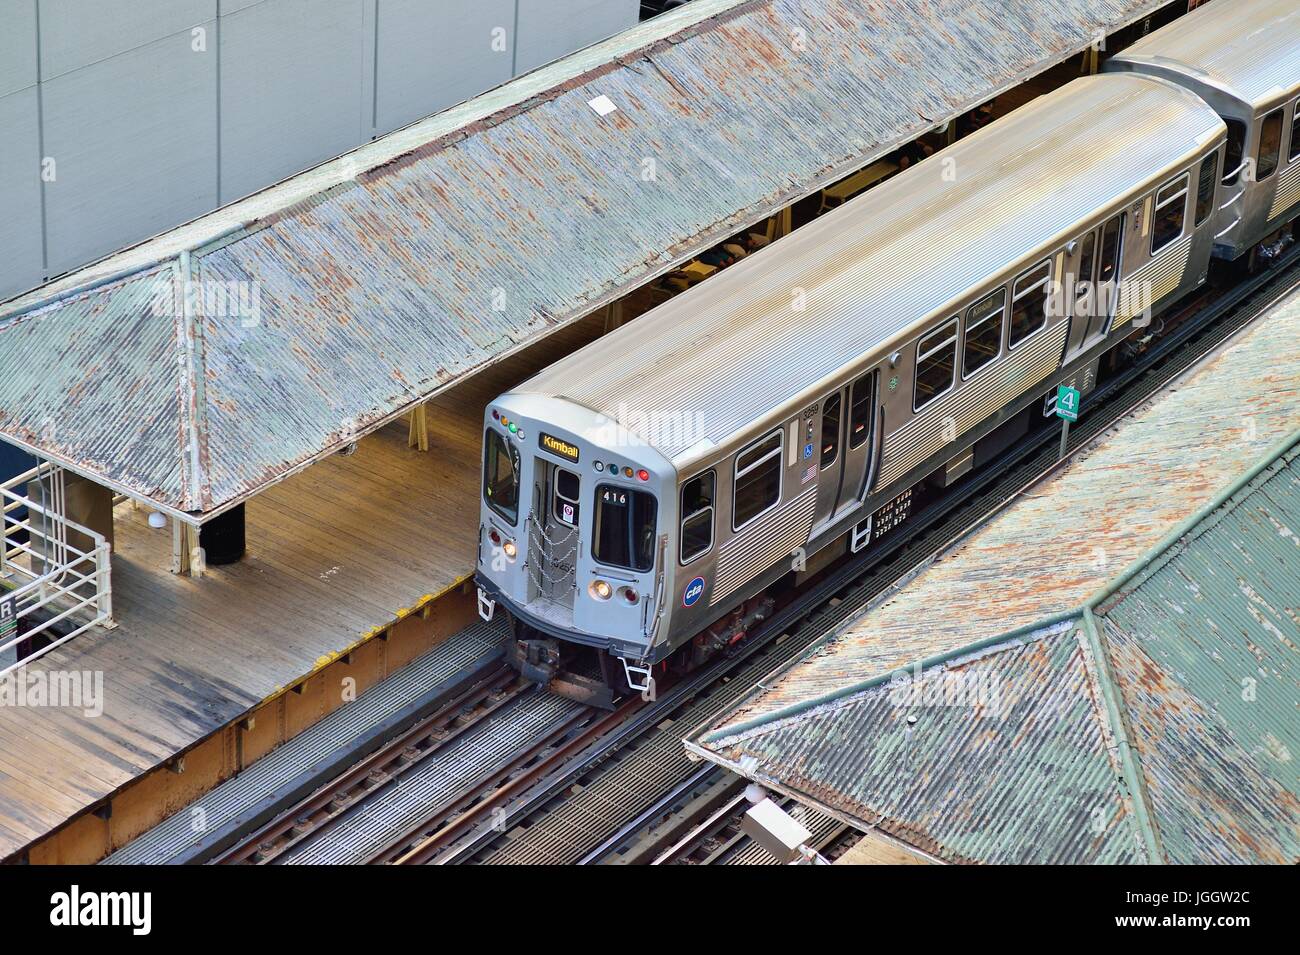 Sulle vie che formano il percorso ad anello che definisce Chicago la famosa area del centro cittadino, un CTA Rapid Transit Train in pausa in corrispondenza di una stazione. Chicago, Illinois, Stati Uniti d'America. Foto Stock